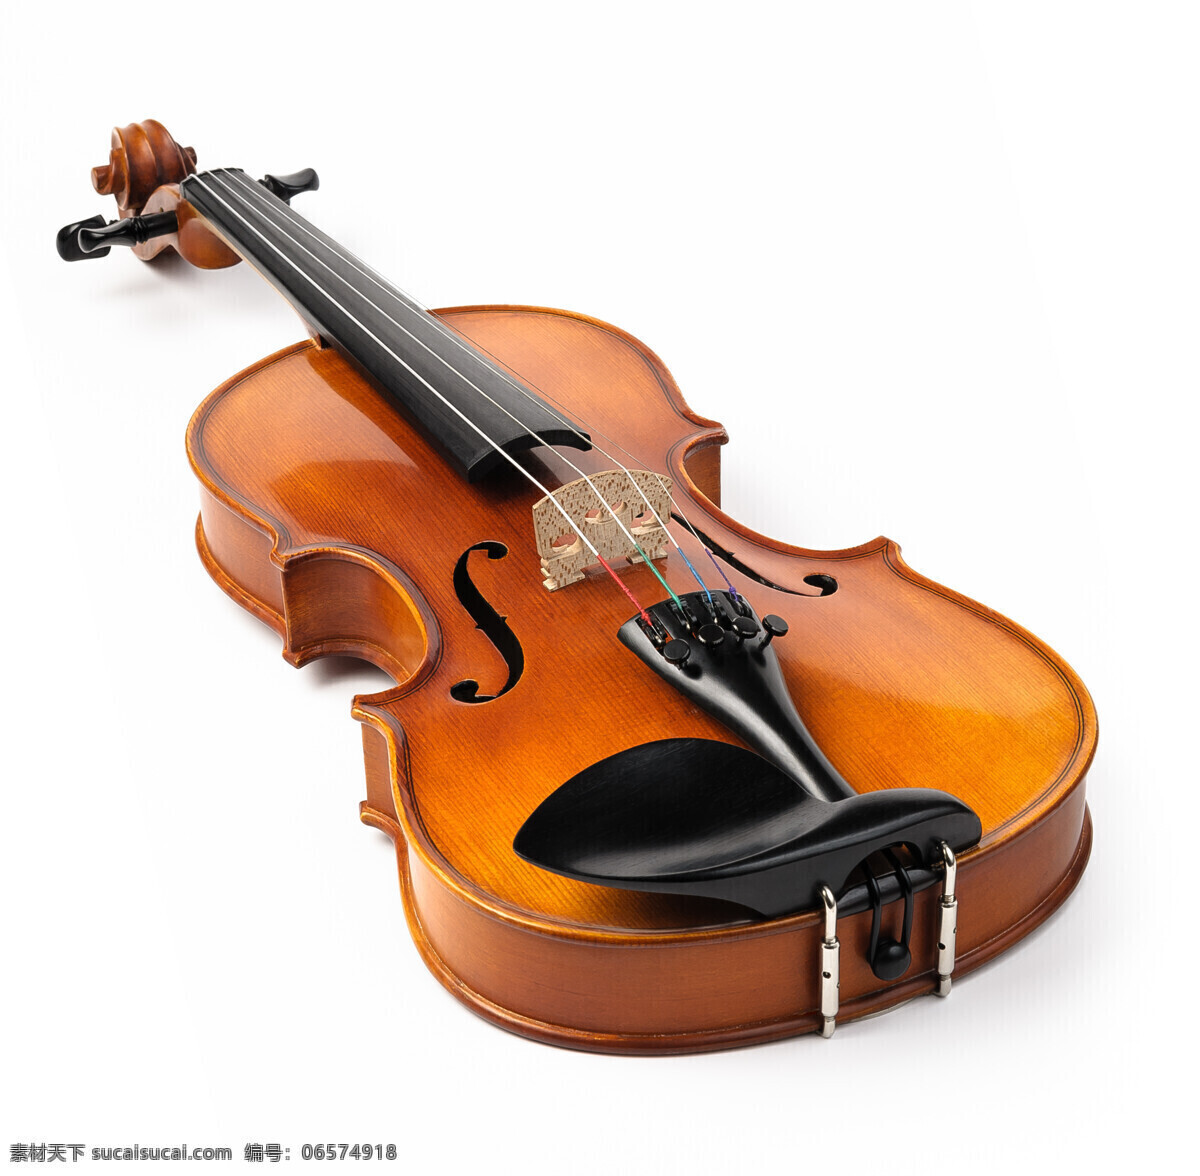 一把 小提琴 音乐器材 乐器 西洋乐器 影音娱乐 生活百科